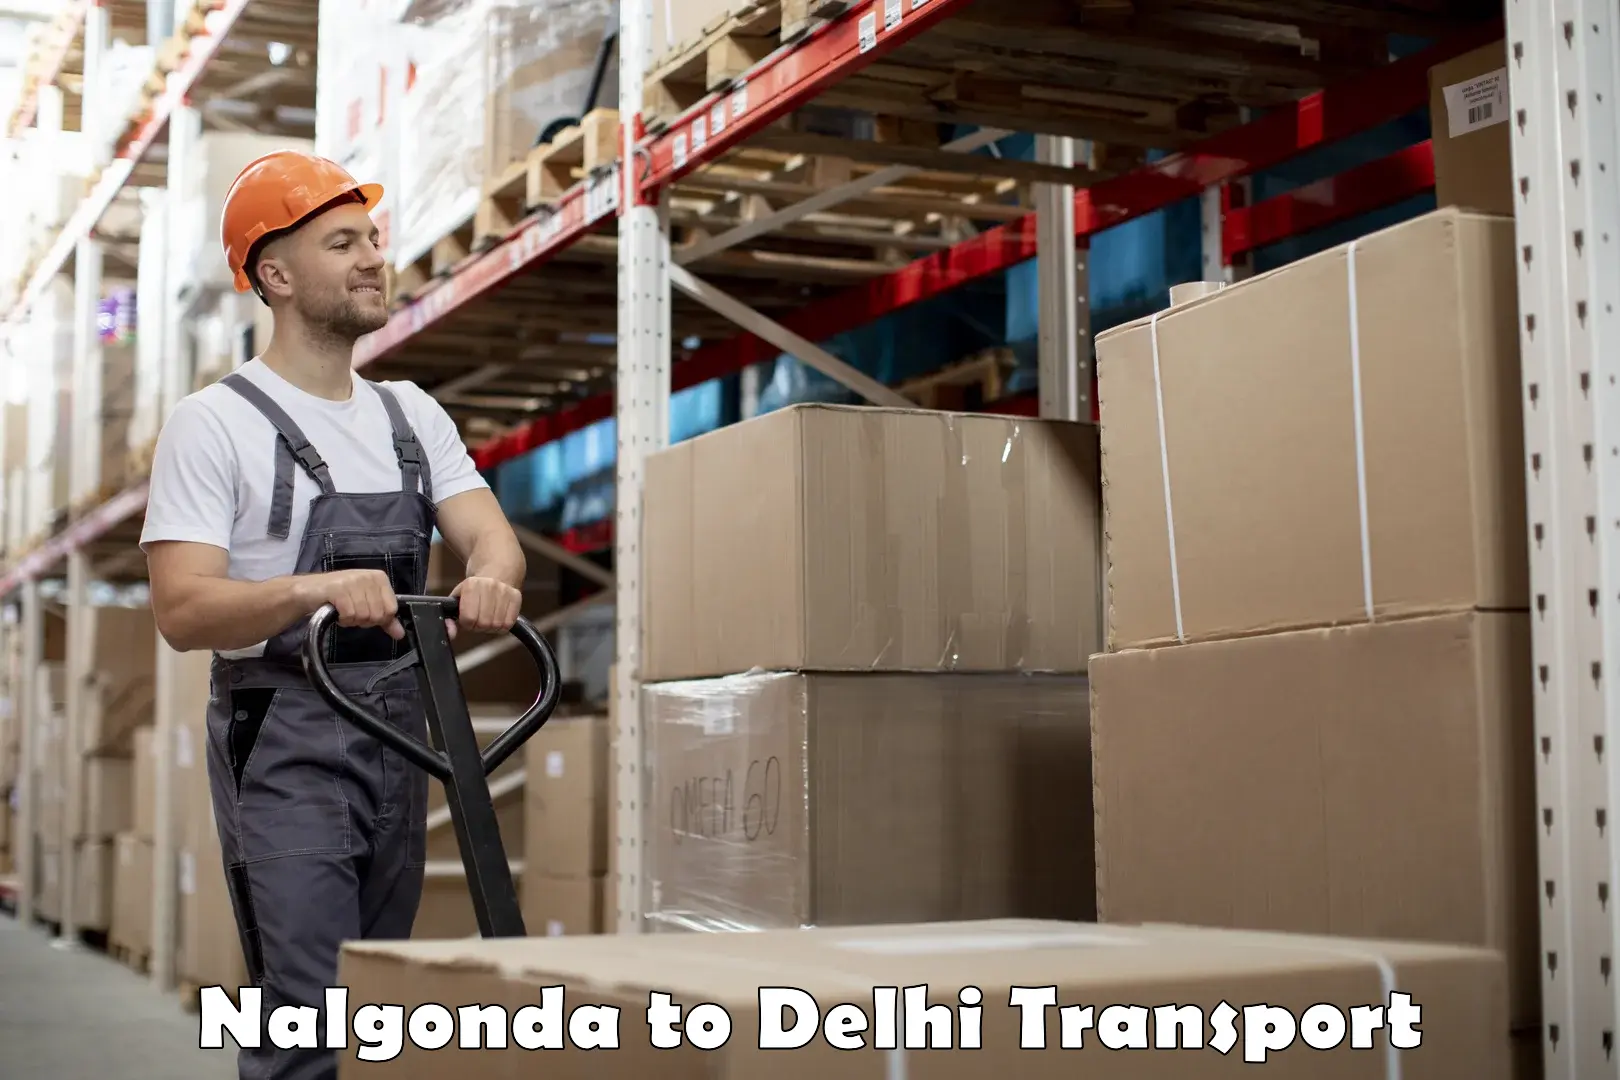 Furniture transport service Nalgonda to Kalkaji